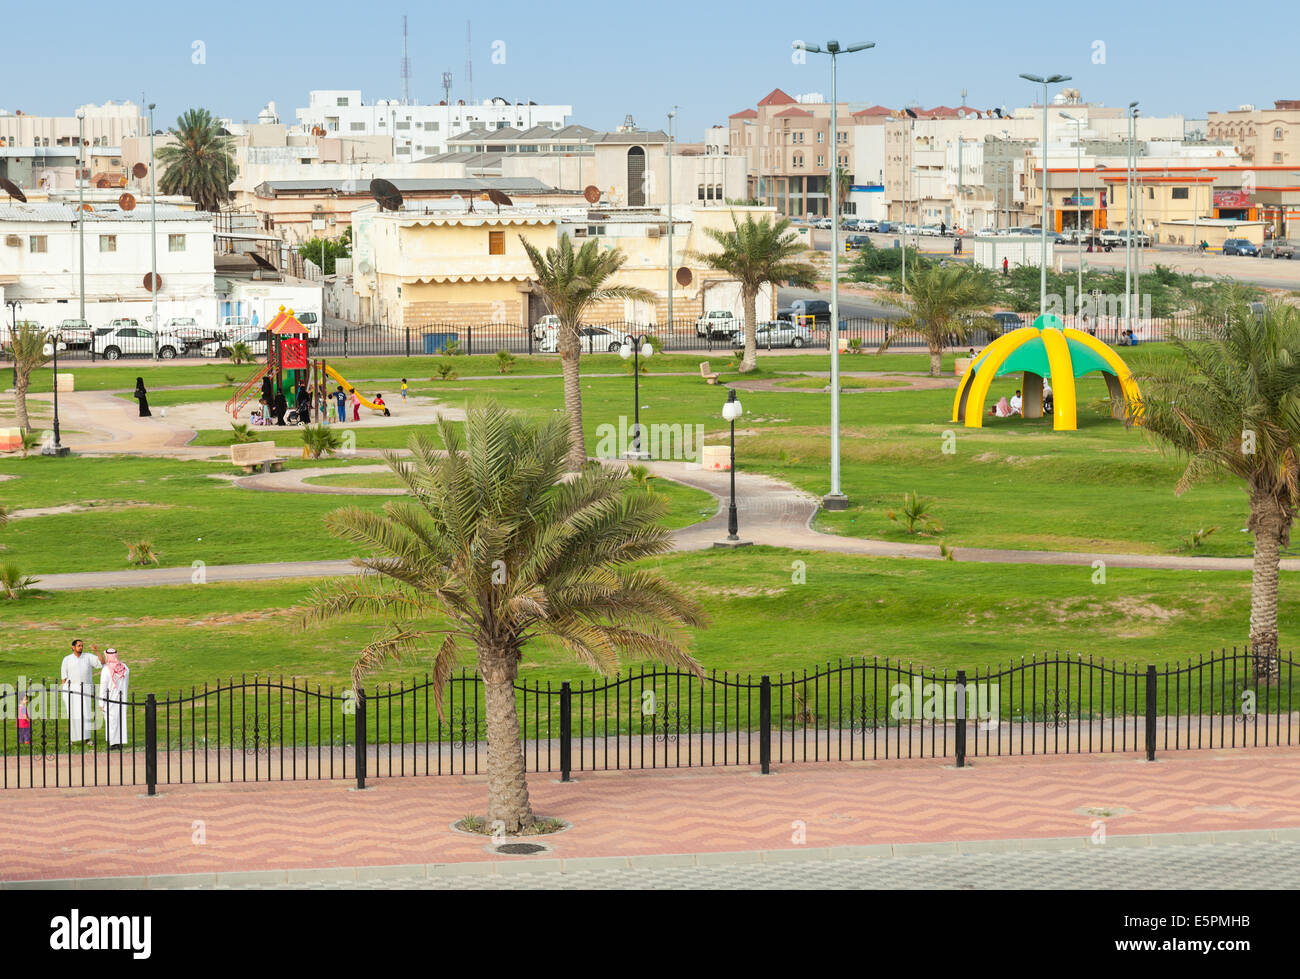 RAHIMA, SAUDI Arabien - 10. Mai 2014: Spielplatz mit gewöhnlichen Menschen, Saudi Arabien Stockfoto